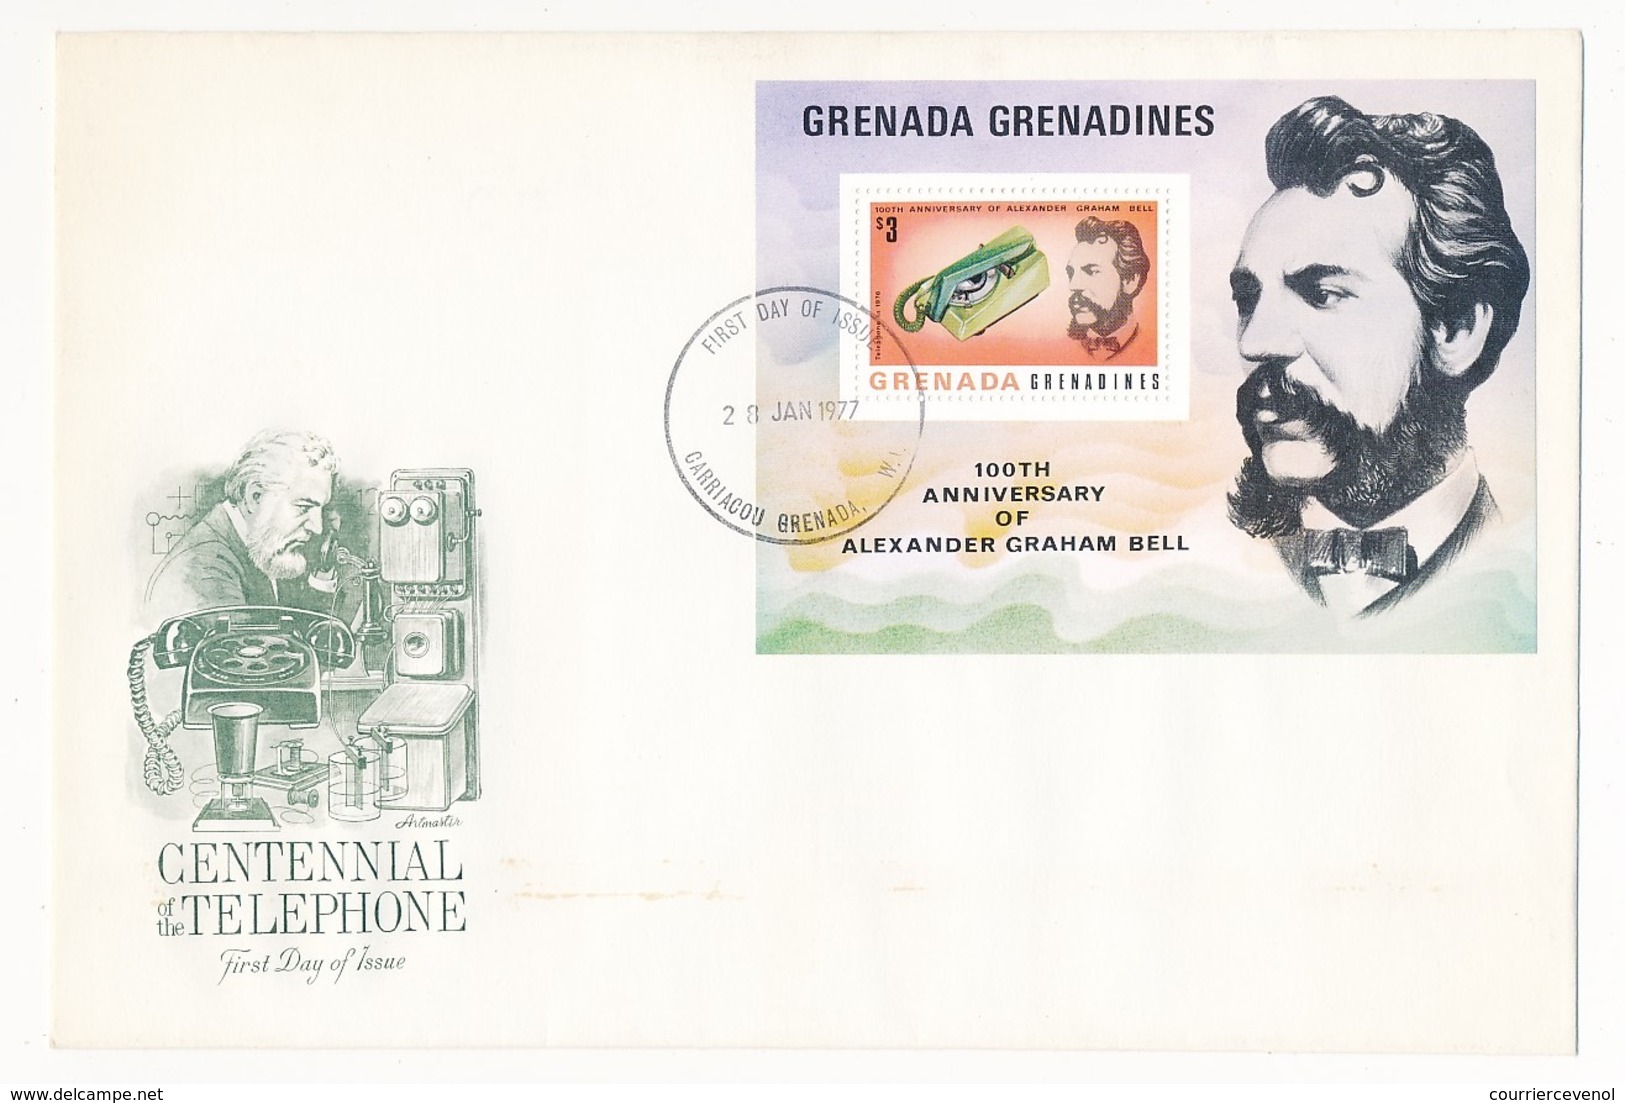 GRENADA - GRENADINES - 3 Enveloppes FDC - Centenaire Du Téléphone - Graham BELL - 1977 - Telekom